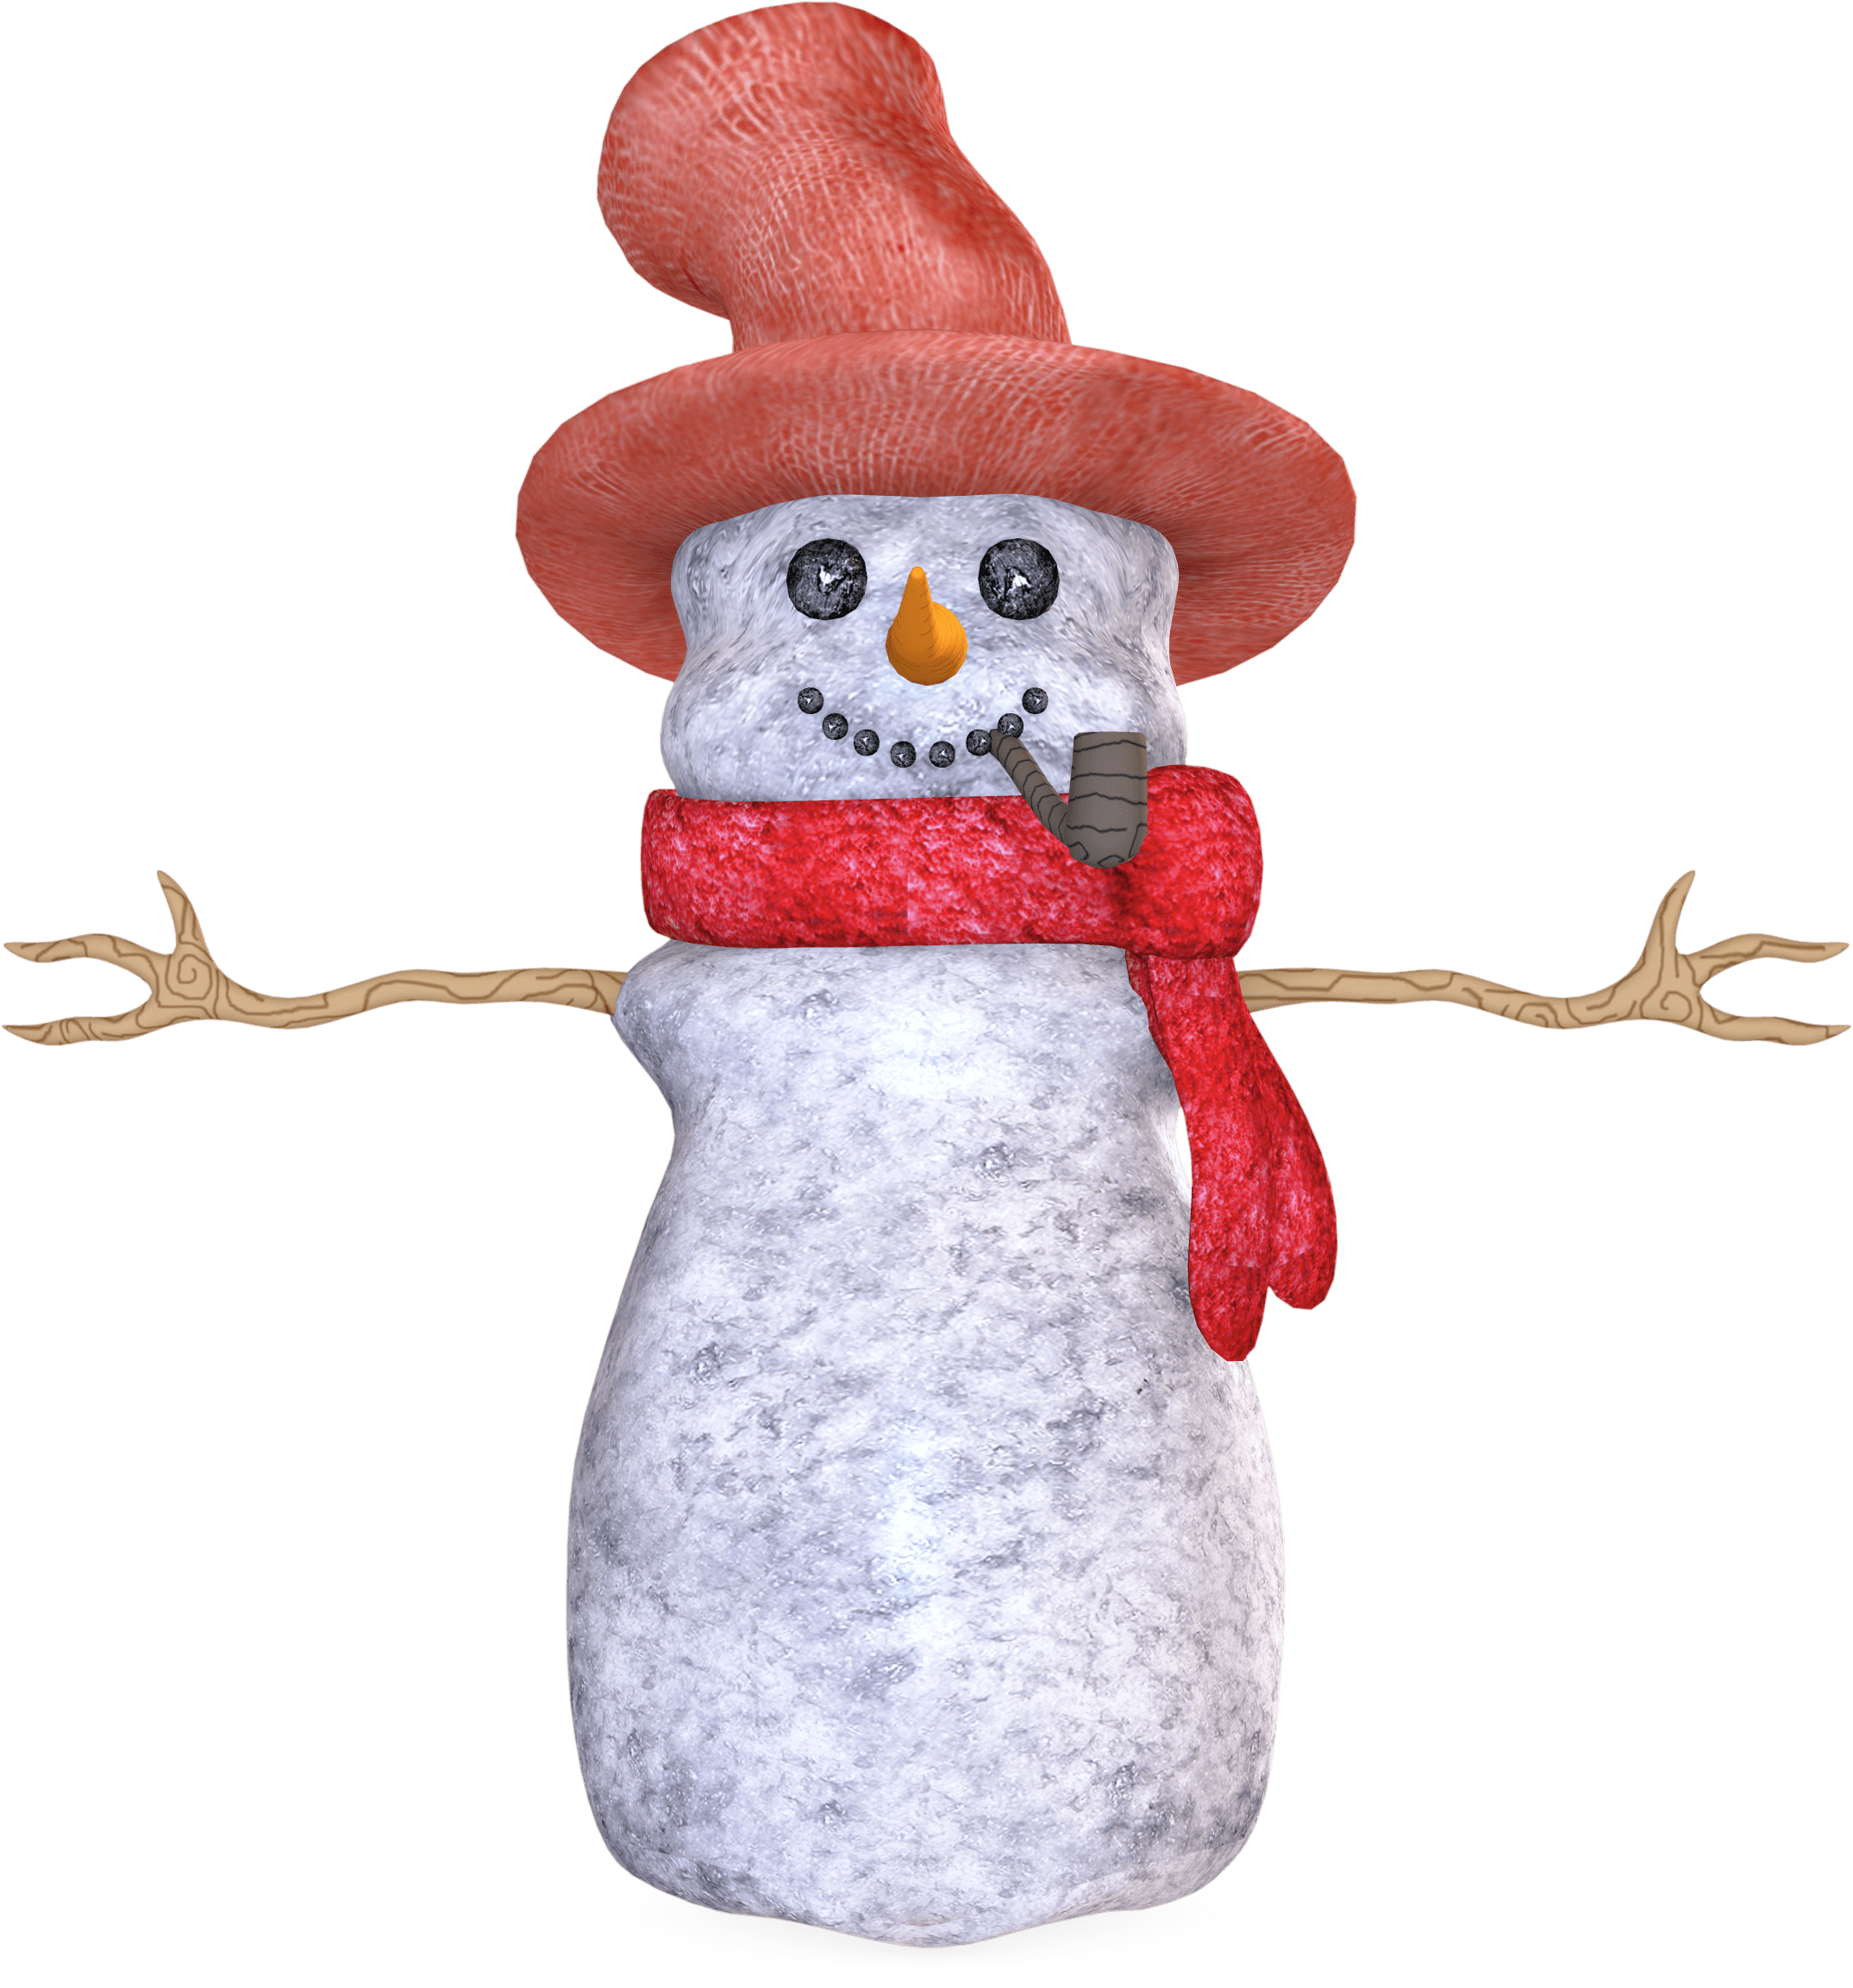 lady clipart snowman